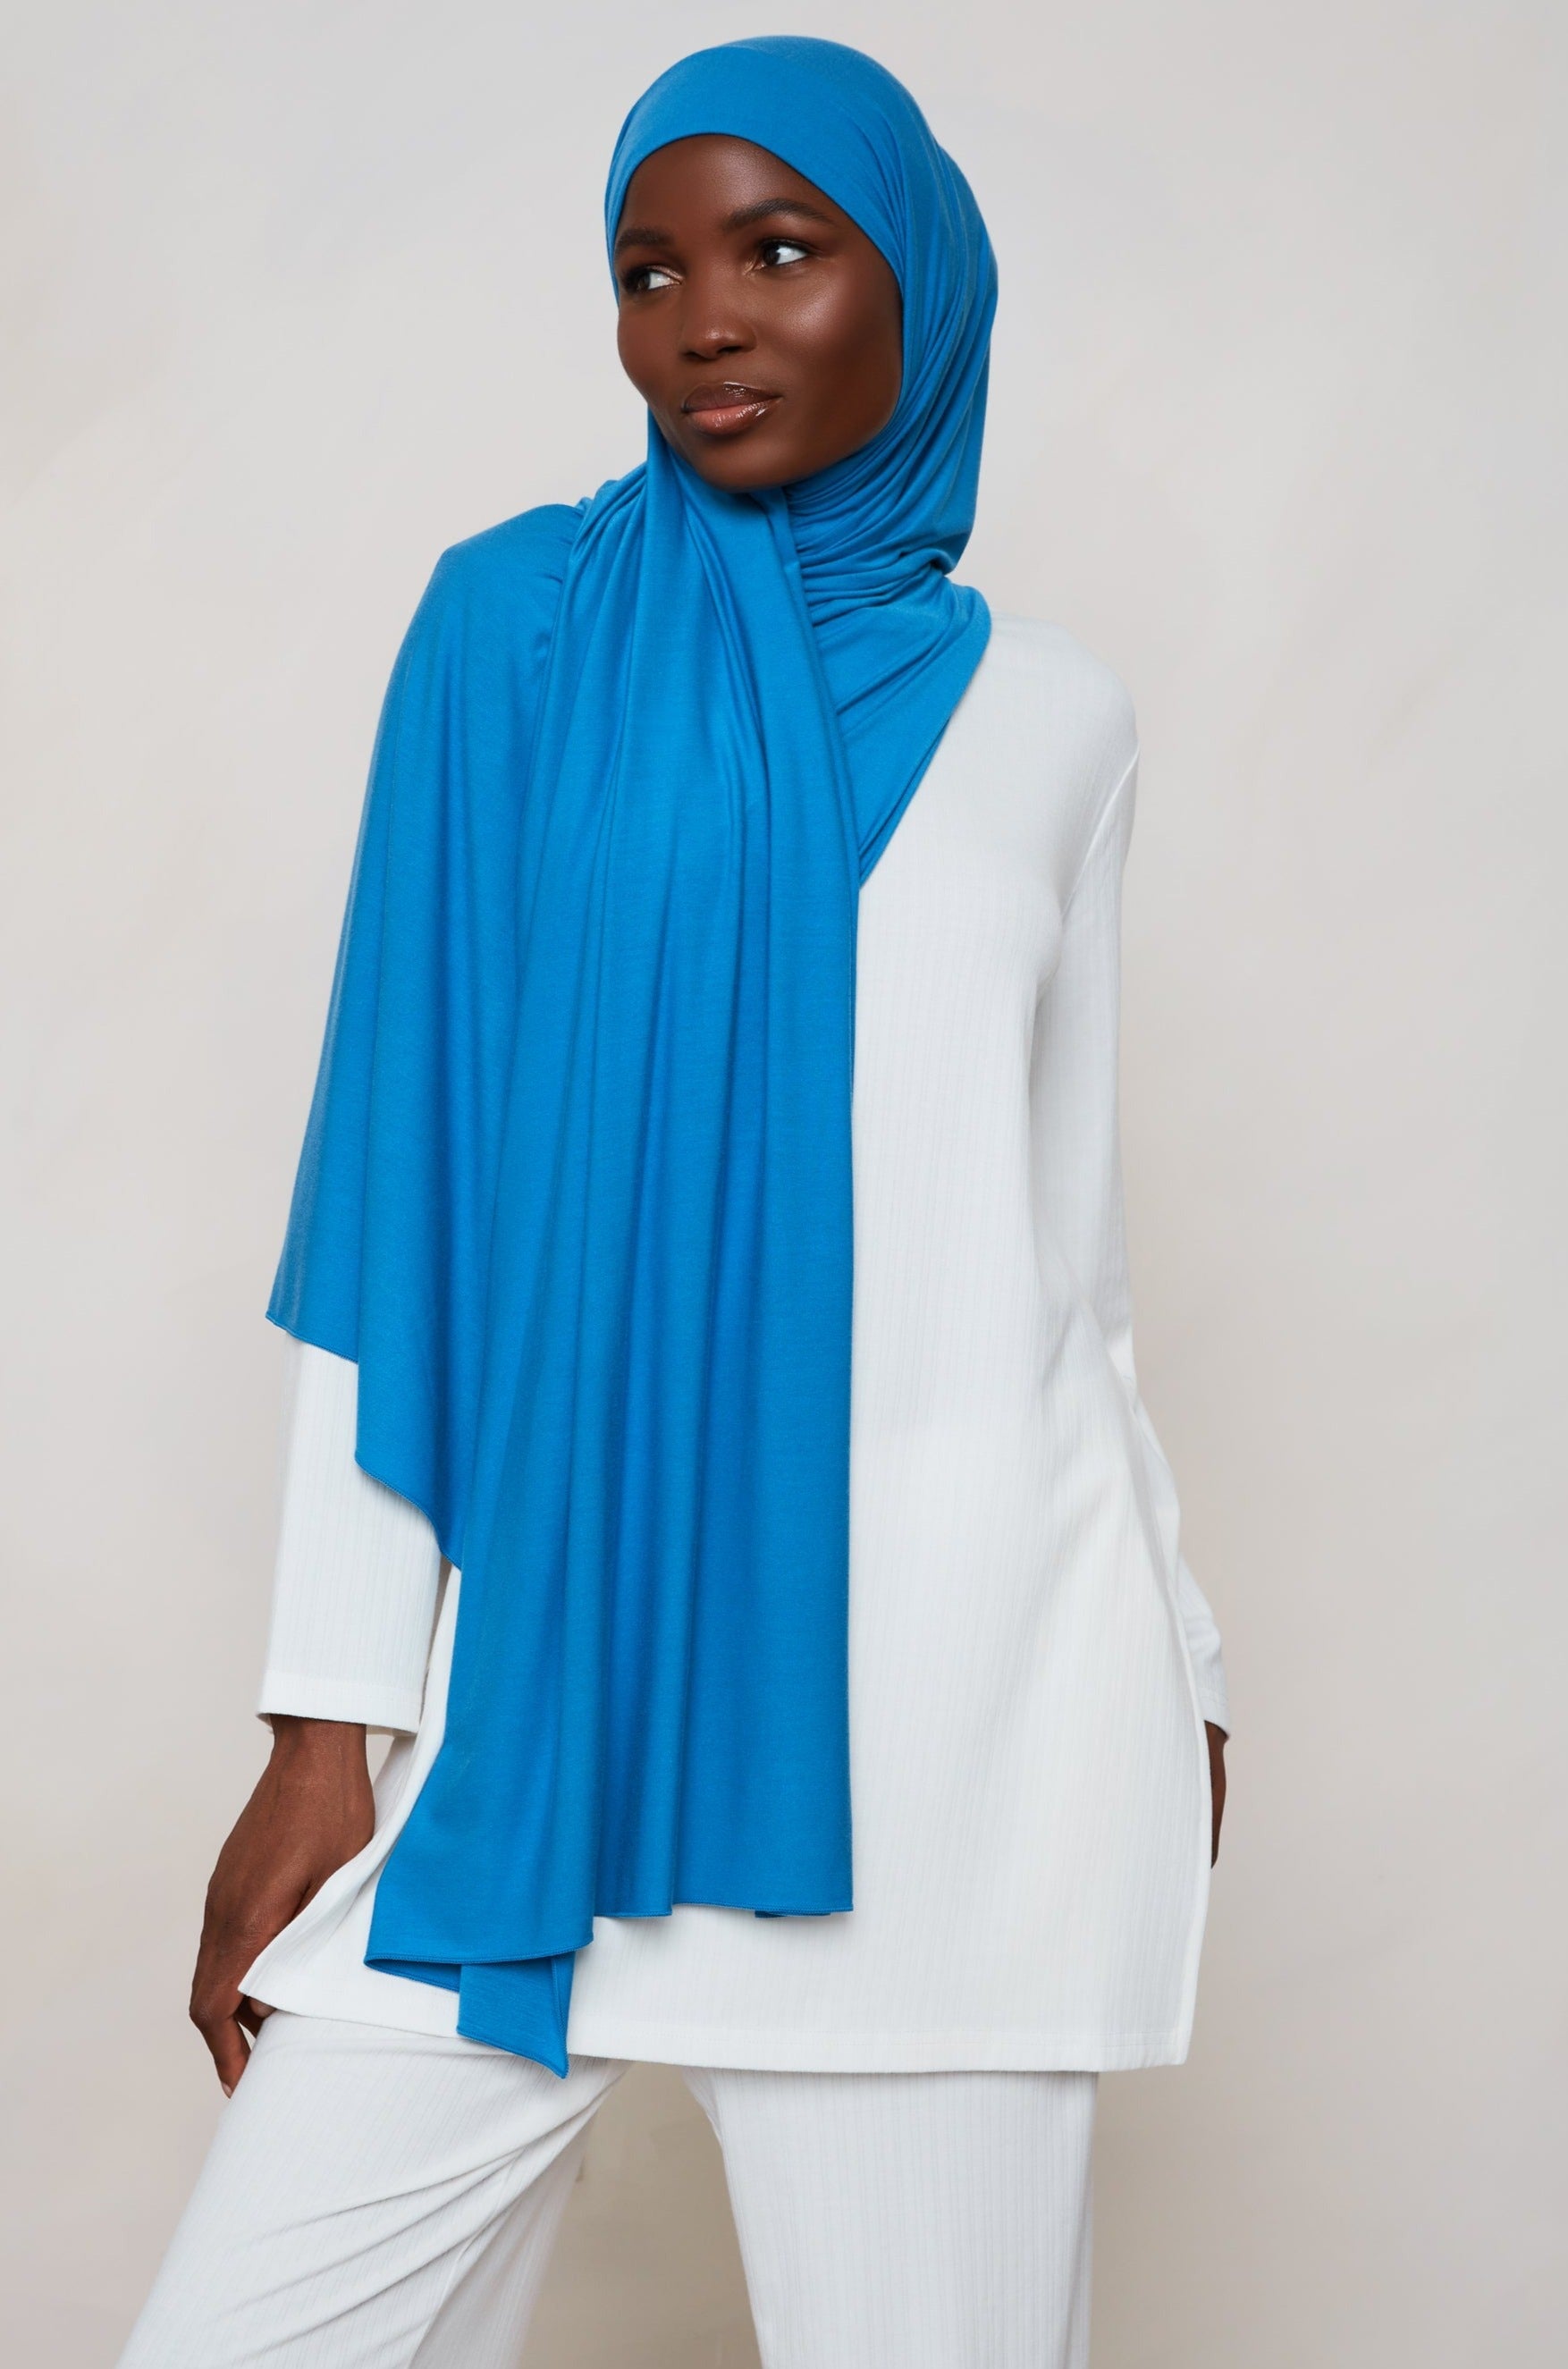 Matching Hijab and Bamboo Undercap Sets